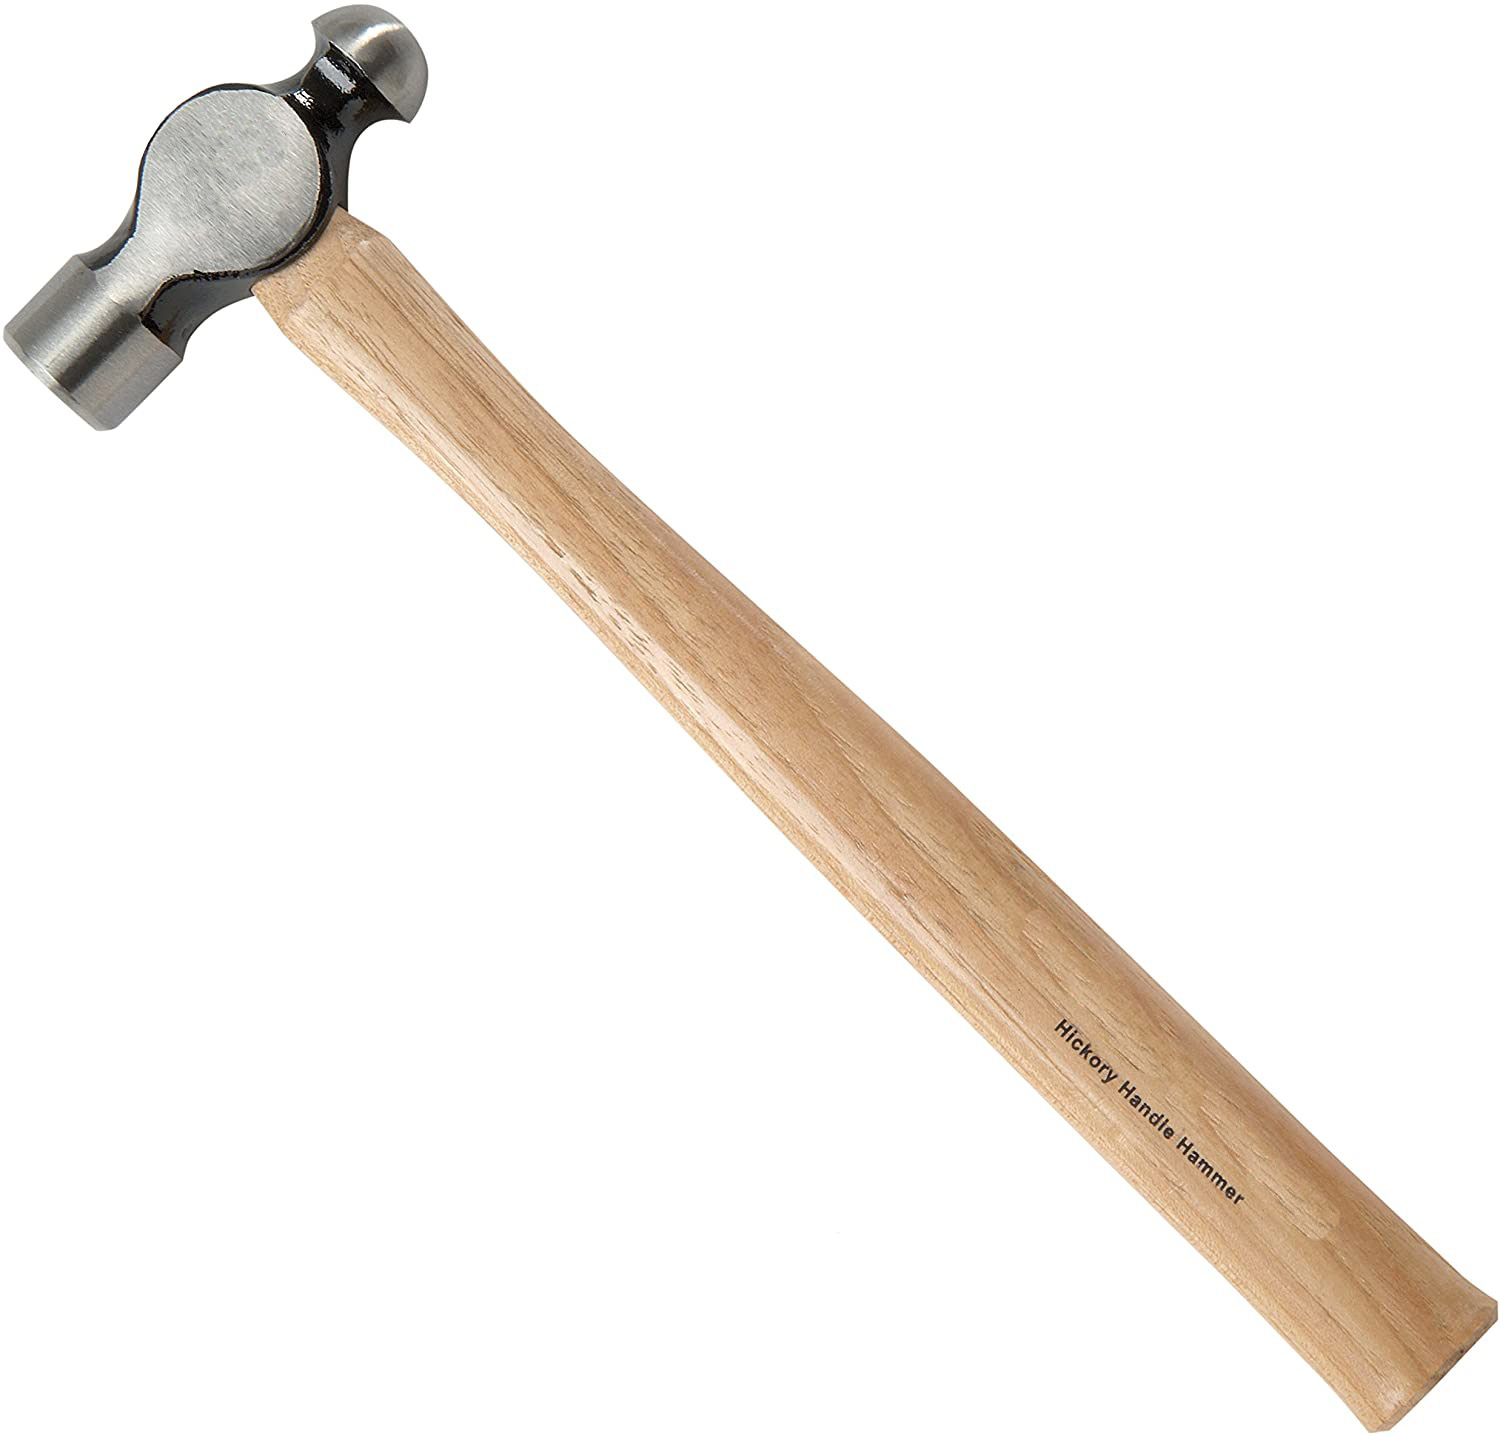 32OZ Ball Peen Hammerwith wood handle